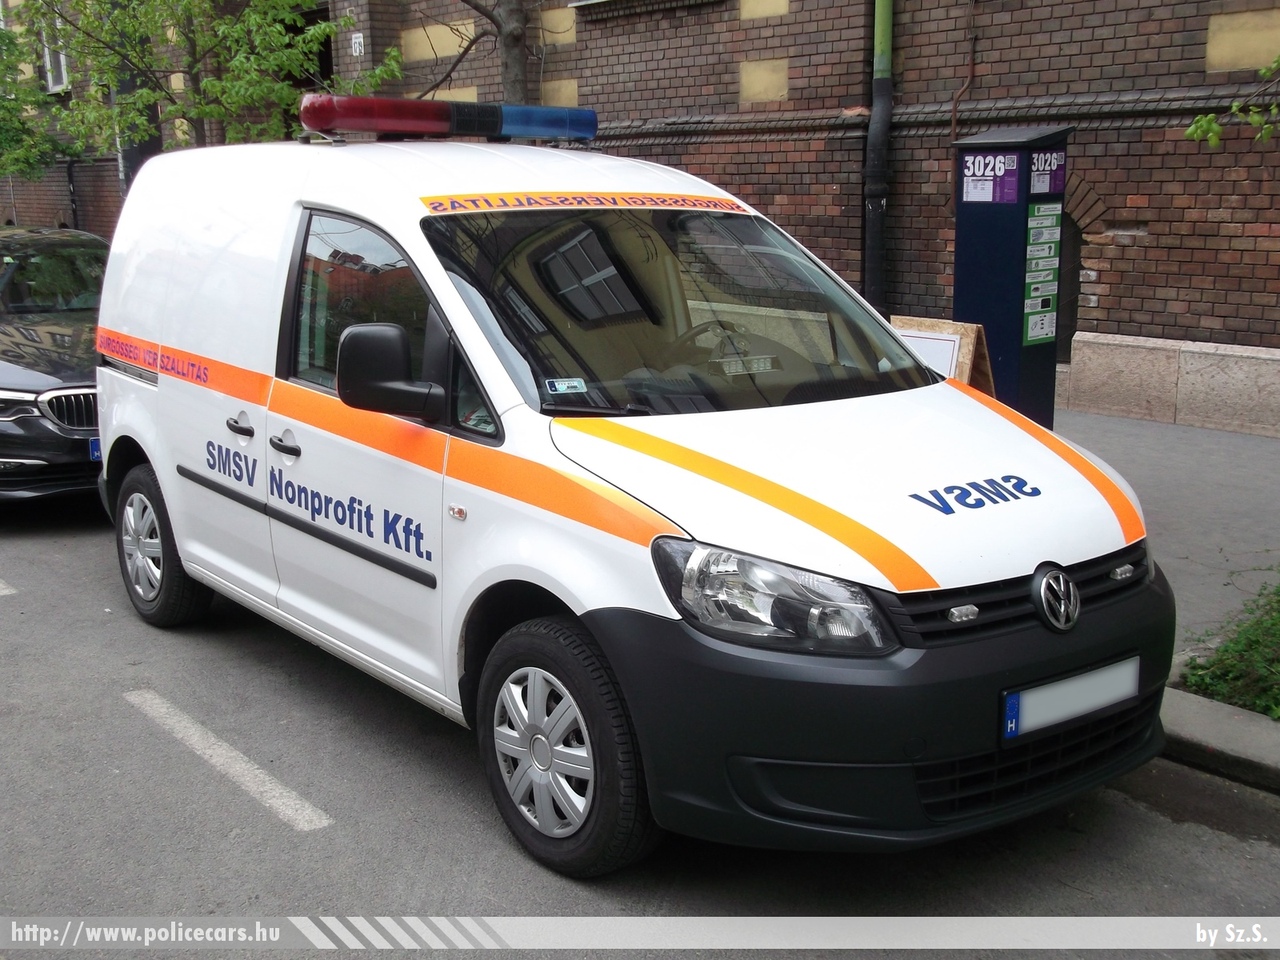 Volkswagen Caddy, vérszállítás, SMSV Nonprofit Kft., fotó: Sz.S.
Keywords: magyar Magyarország mentő mentőautó Hungary hungarian ambulance 